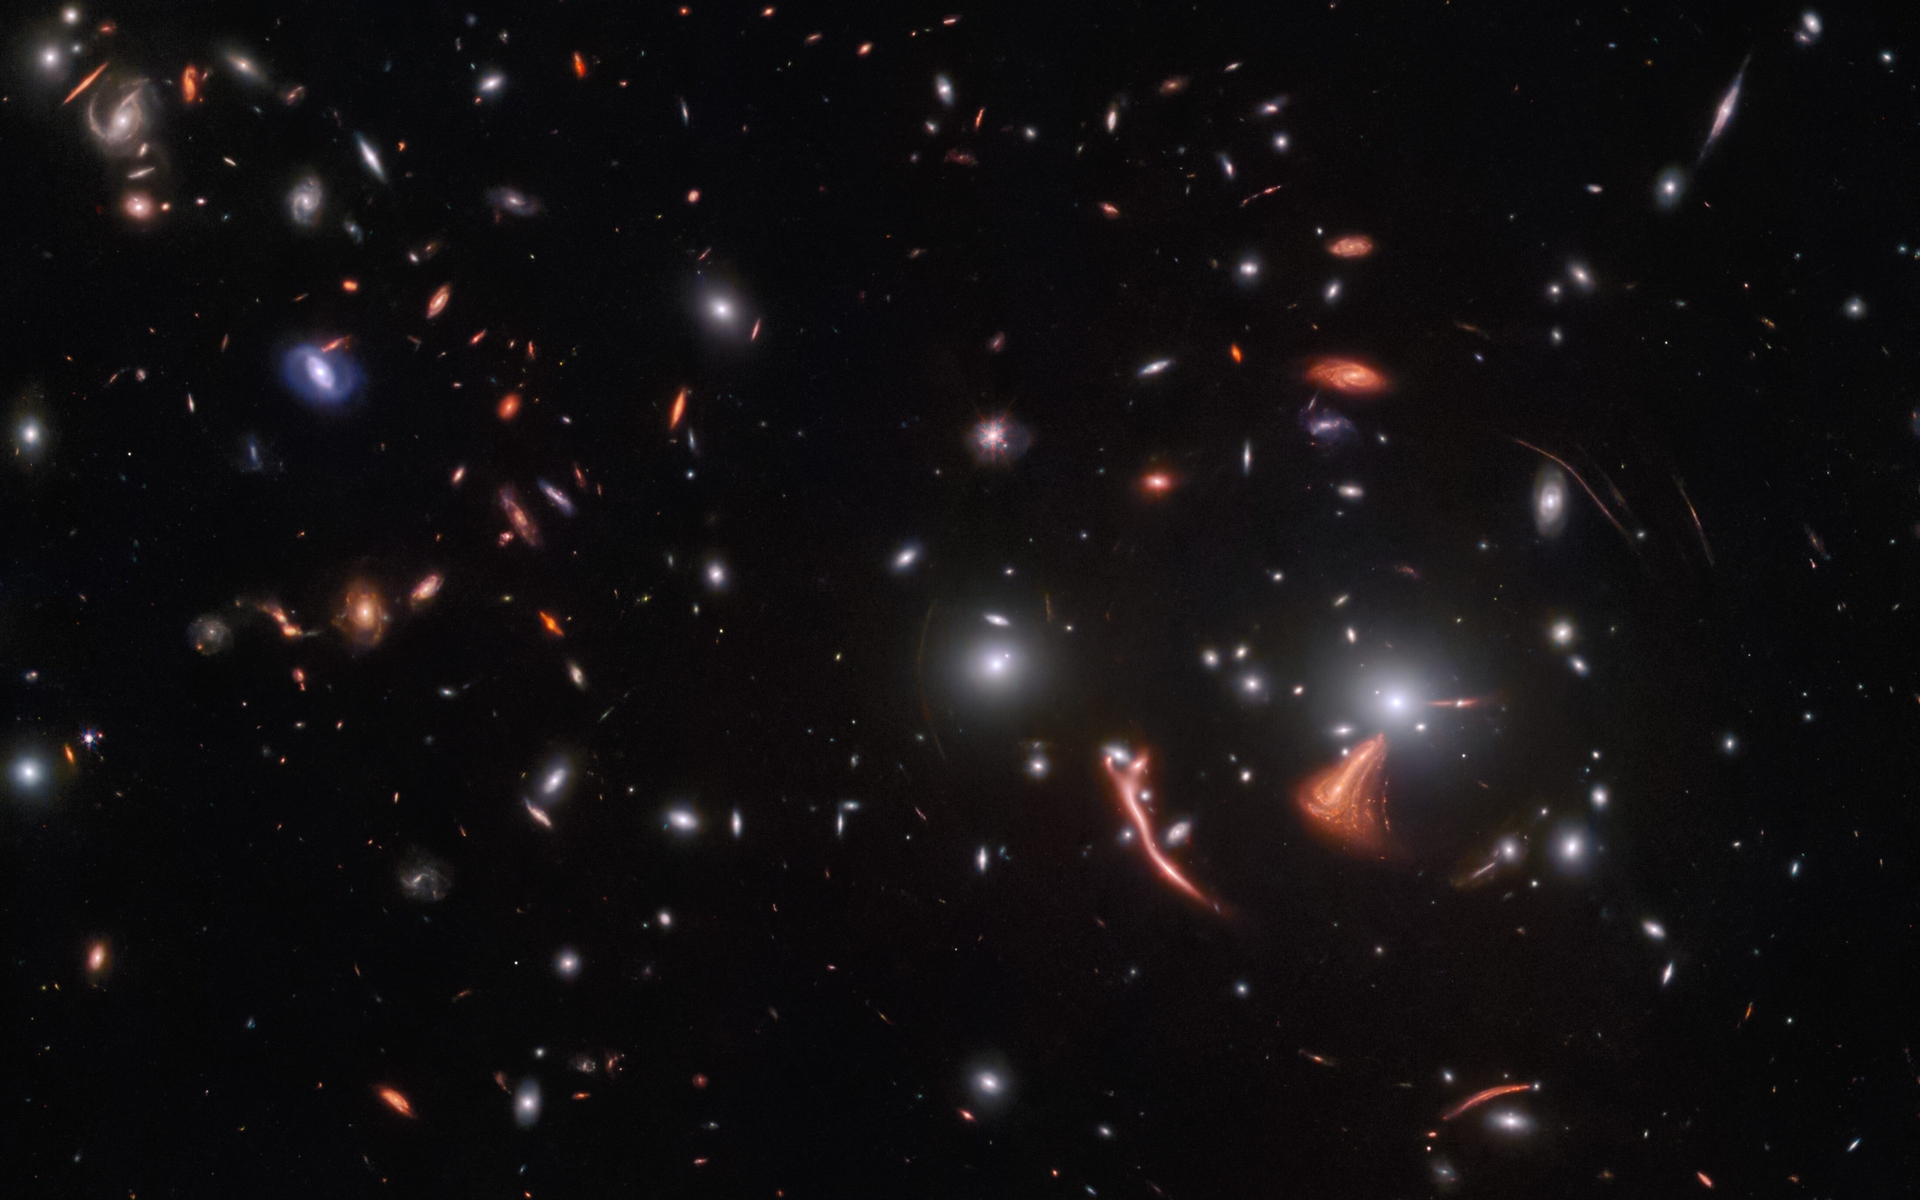 重力透鏡作用下遠方的螺旋星系被放大扭曲，成為奇特的外形。來源：ESA